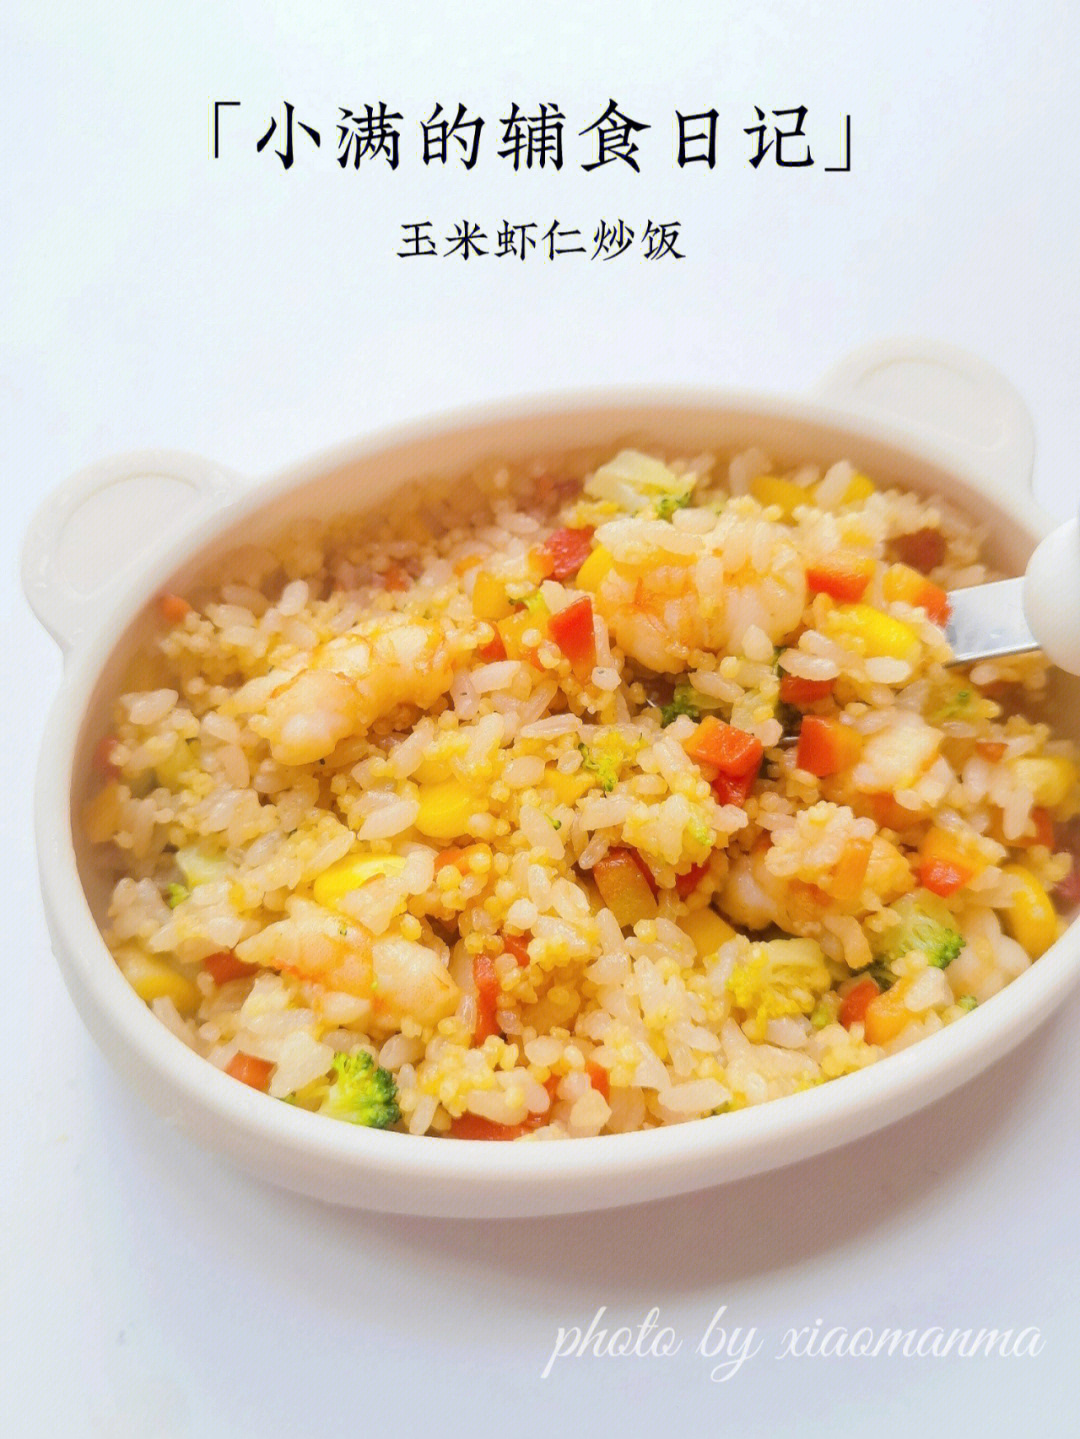 9219m  午餐打卡73玉米虾仁炒饭99食材:玉米,西兰花,胡萝卜